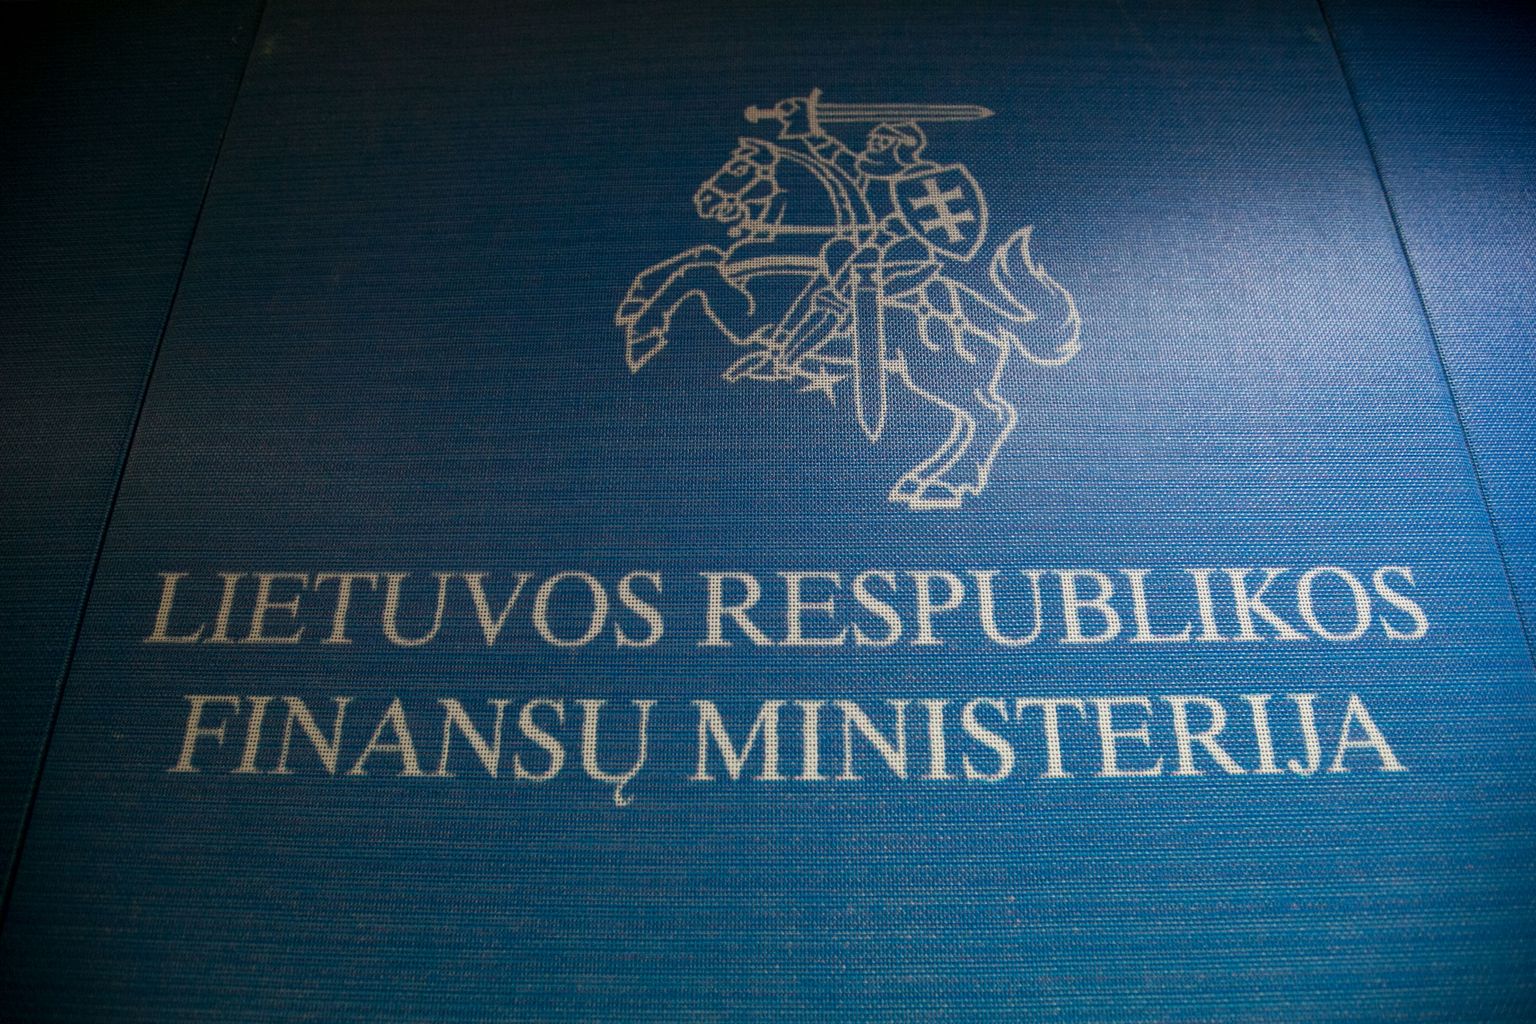 Leedus küpseb pankade liigkasumi maksustamise idee